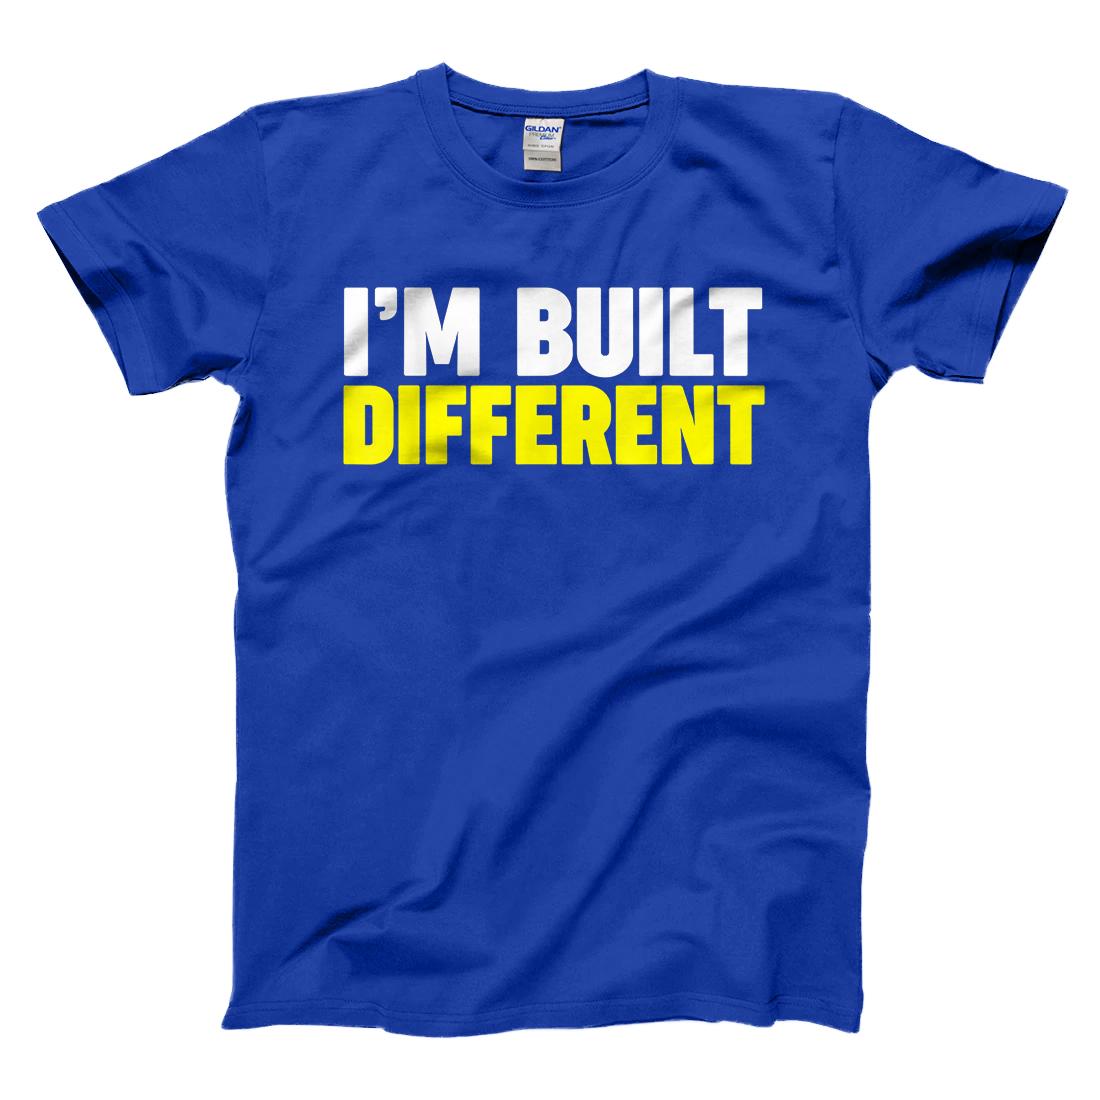 I'm Built Different T-Shirt - All Star Shirt